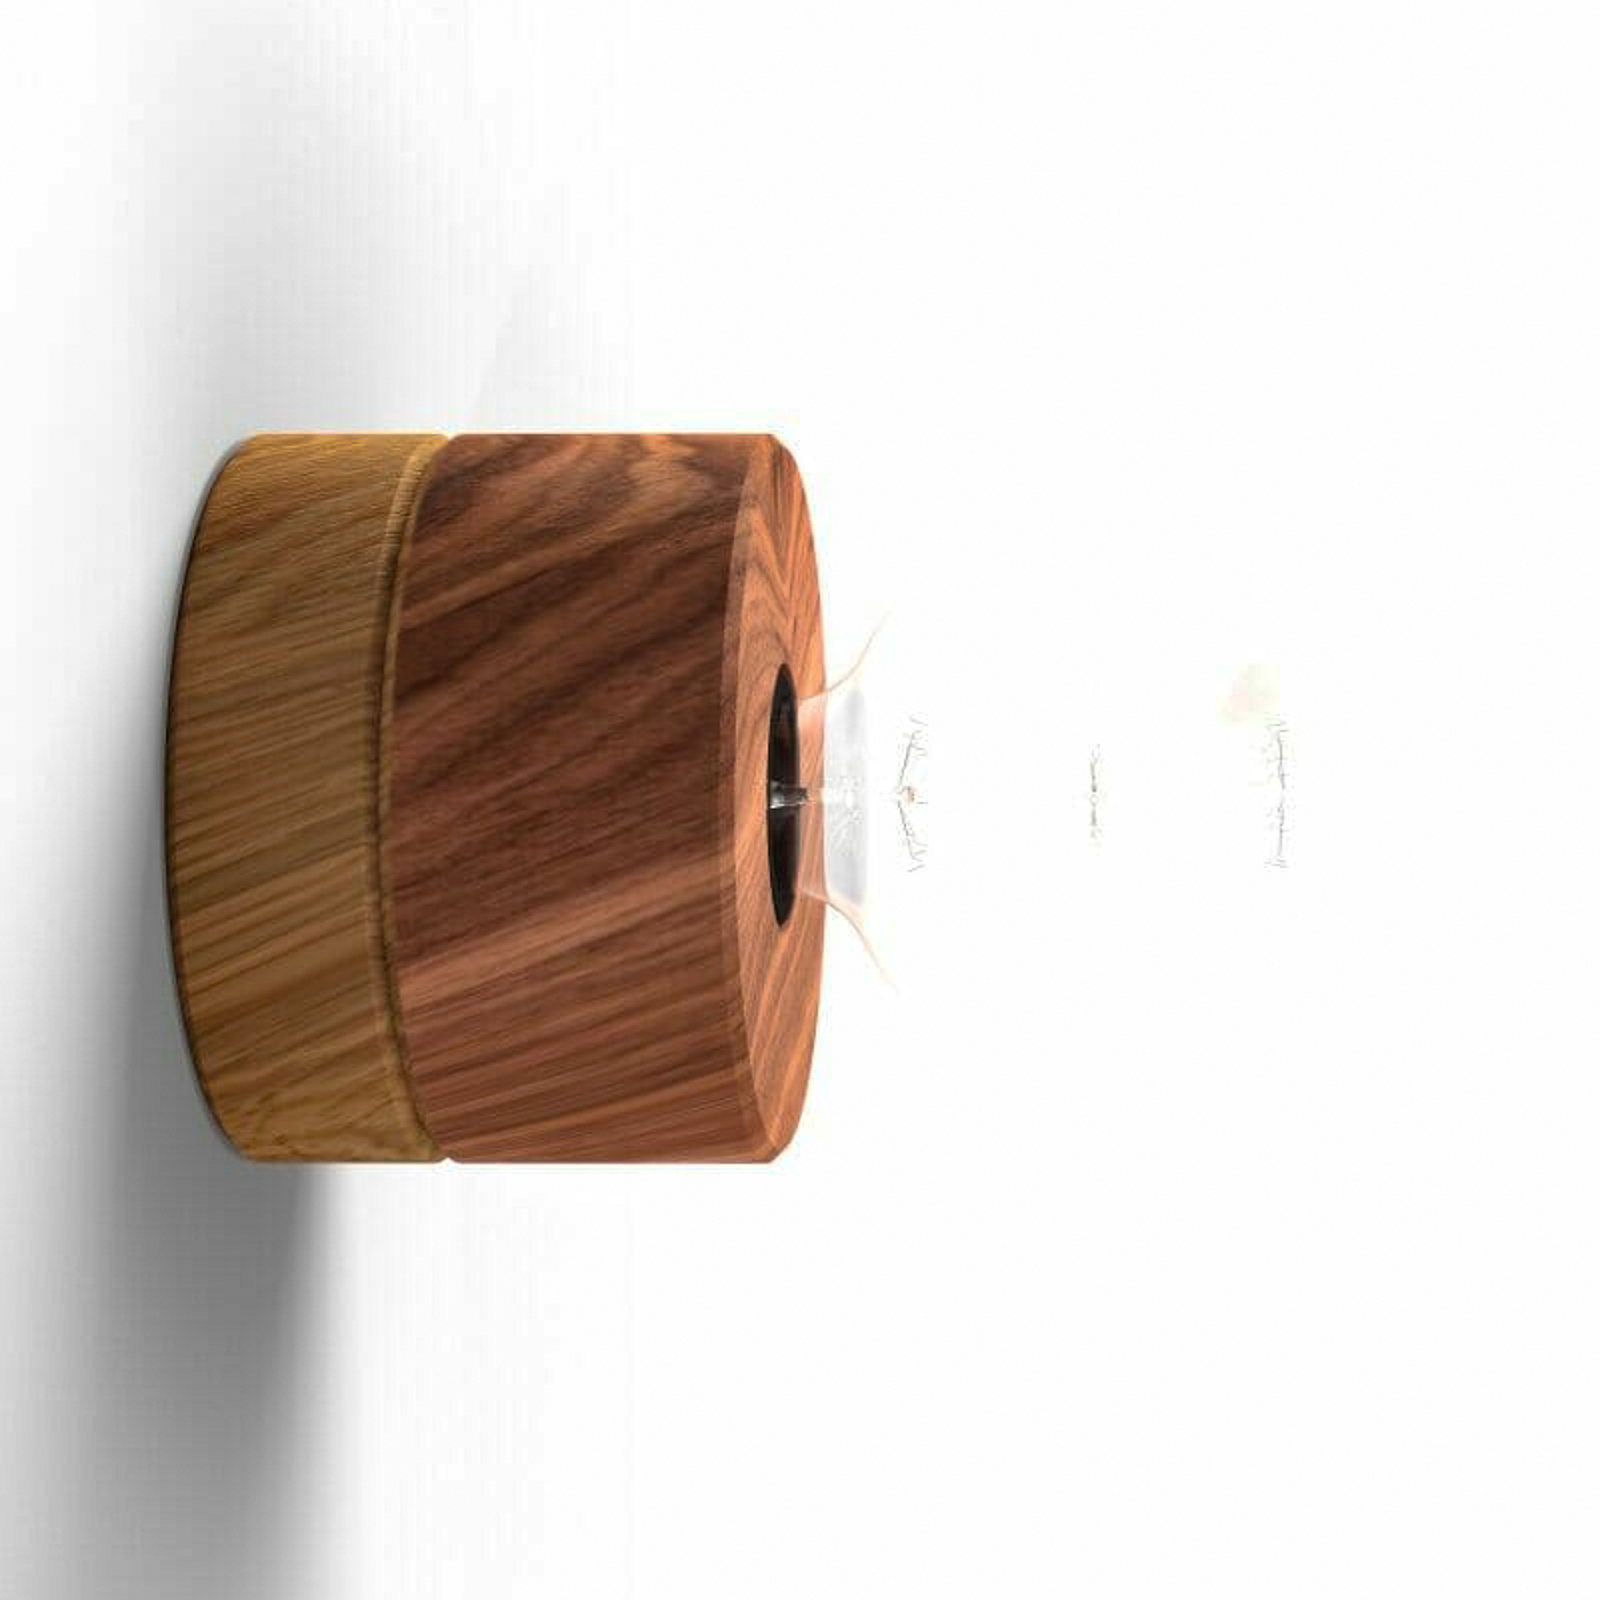 ALMUT 0239 wall lamp, sustainable, walnut/oak